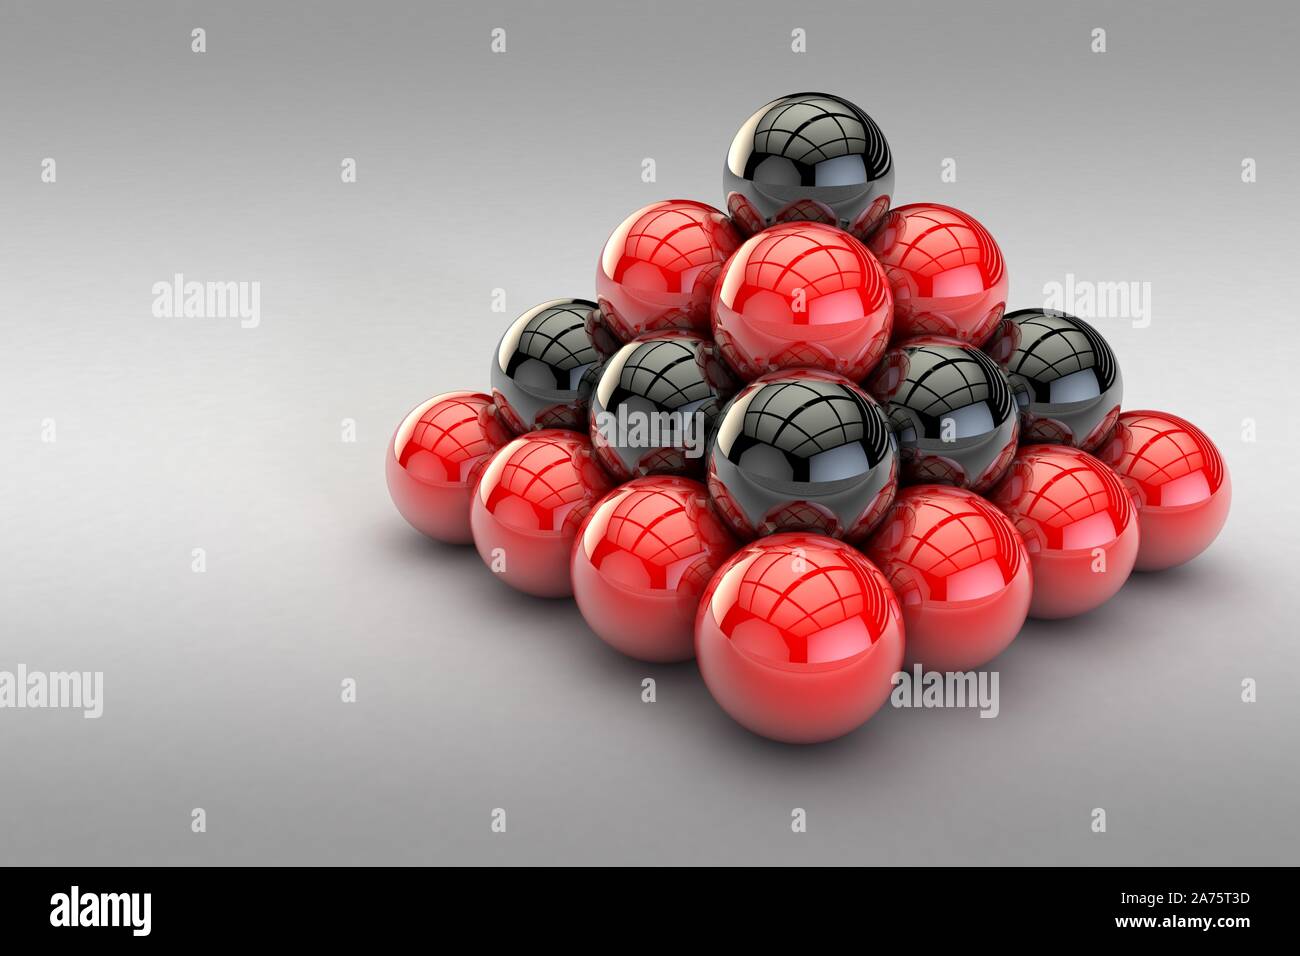 3D illustration, une pyramide de boules rouges et noirs sur un fond blanc Banque D'Images